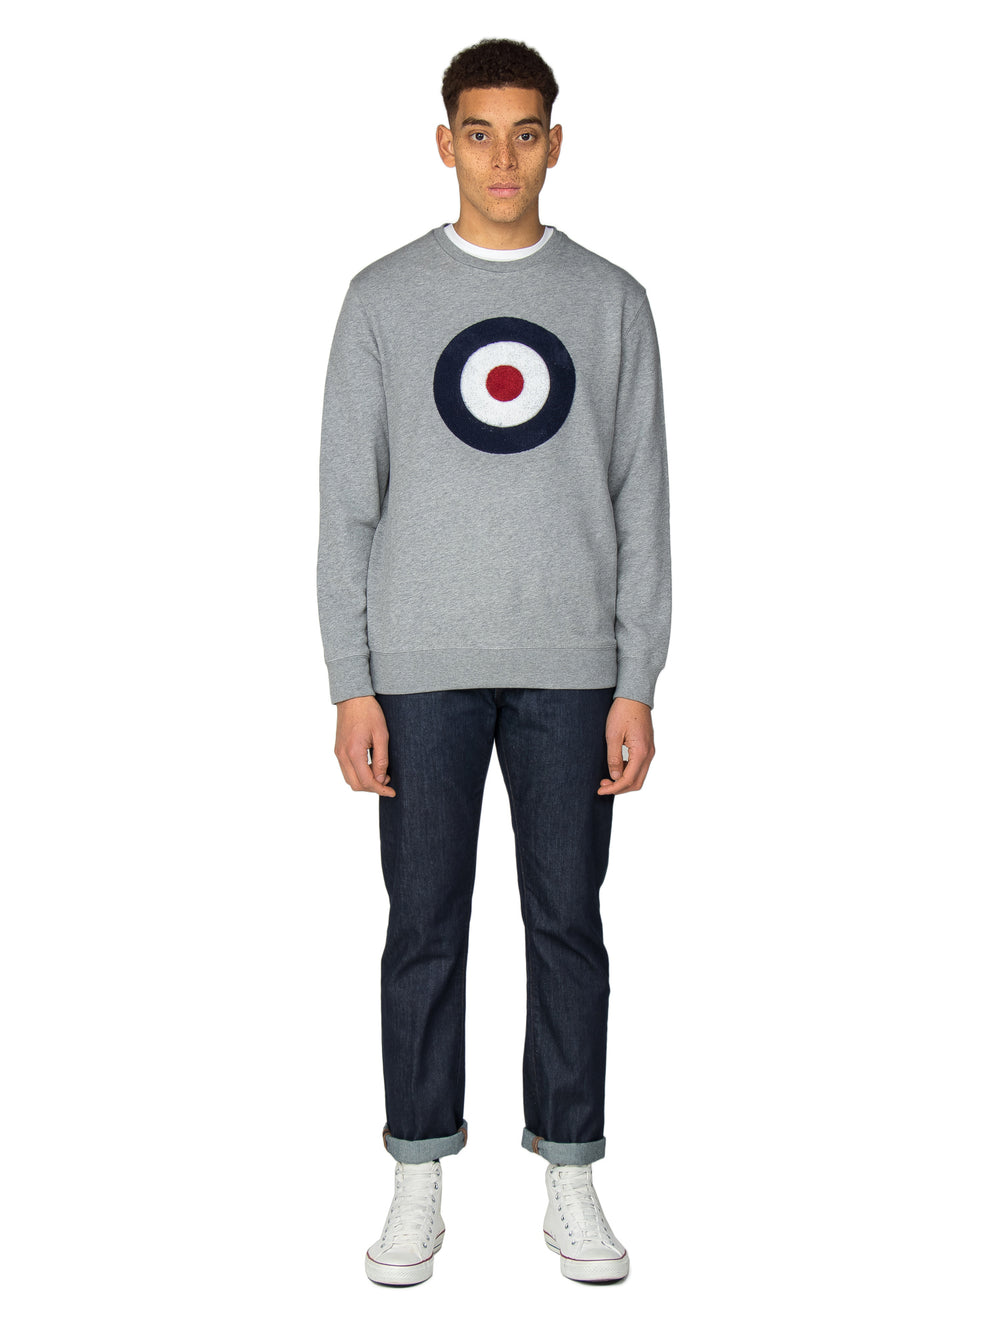 Applique Target Sweatshirt - Grey